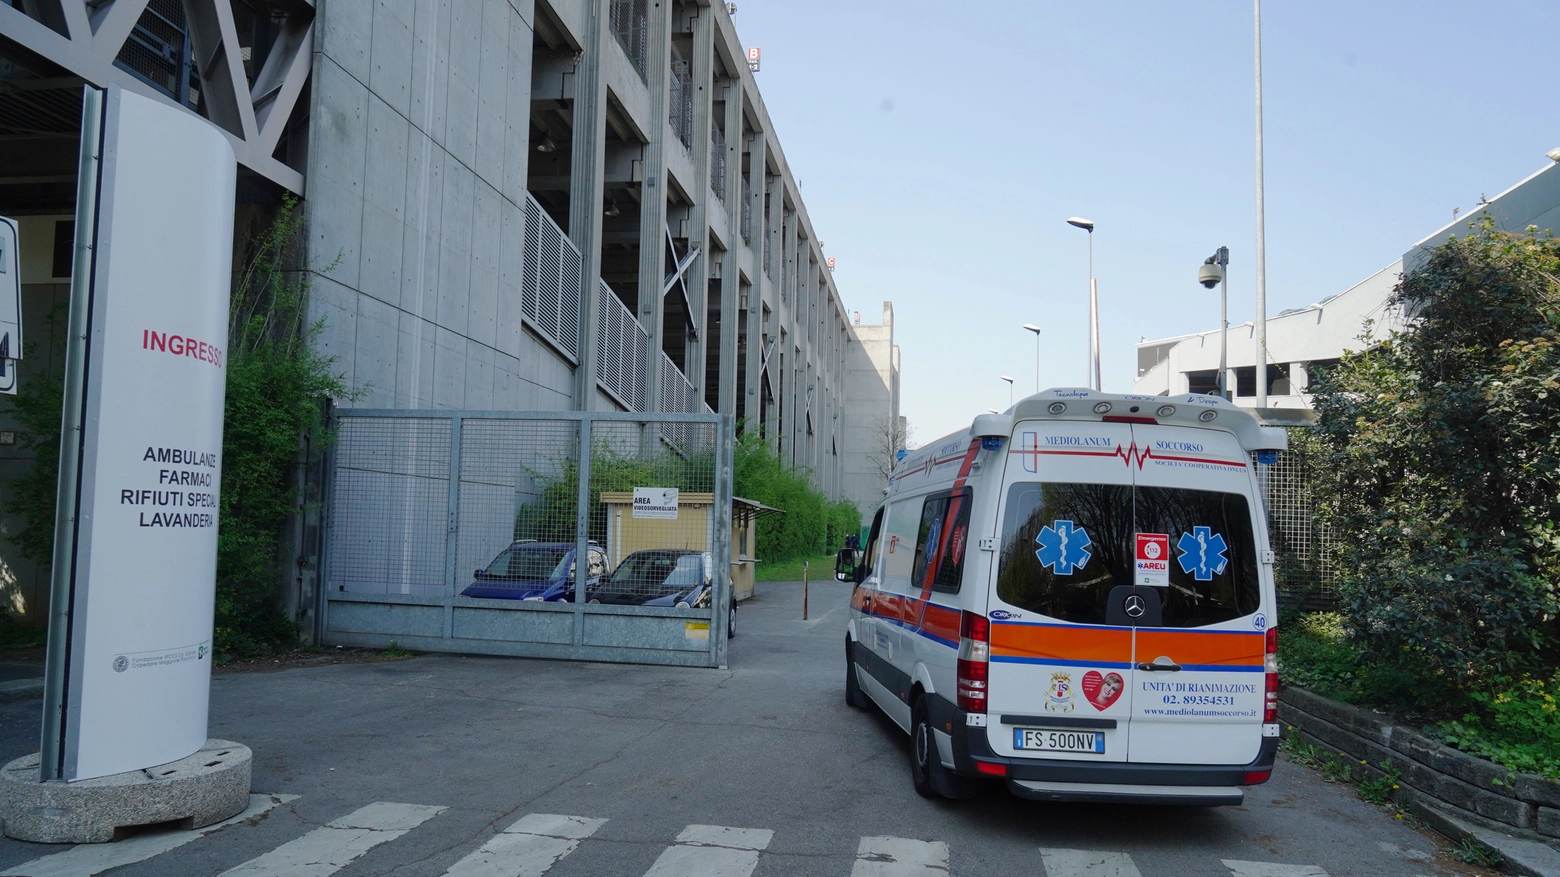 Prima ambulanza entra in ospedale Fiera a Milano